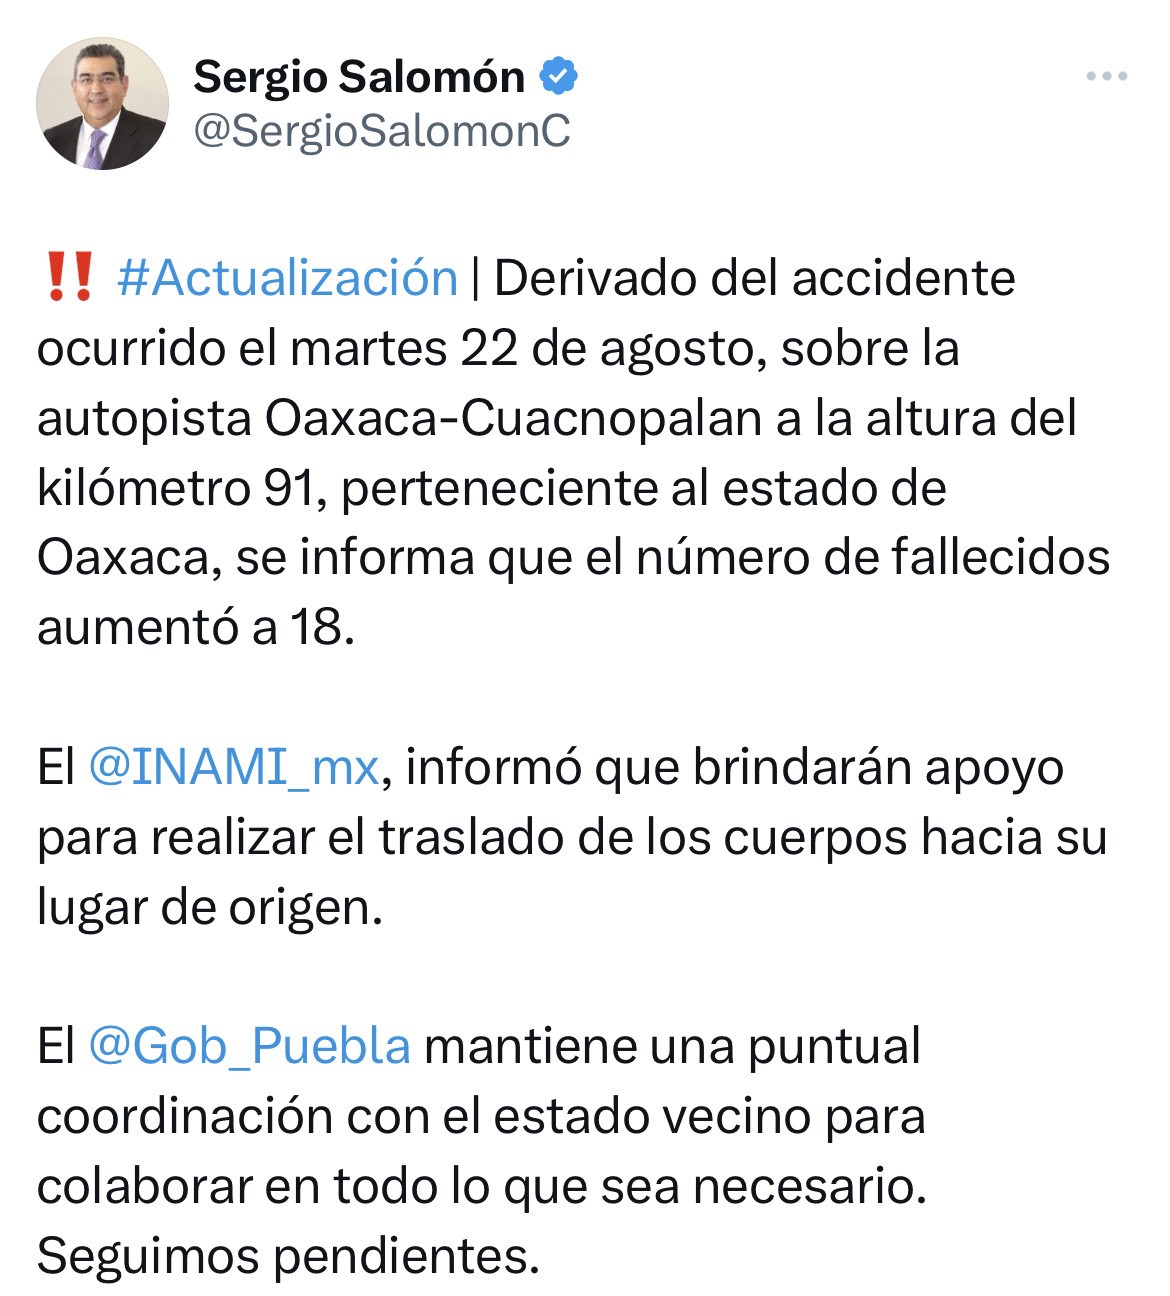 Ya son 18 fallecidos en el accidente sobre la autopista Oaxaca-Cuacnopalan, confirmó Sergio Salomón Céspedes